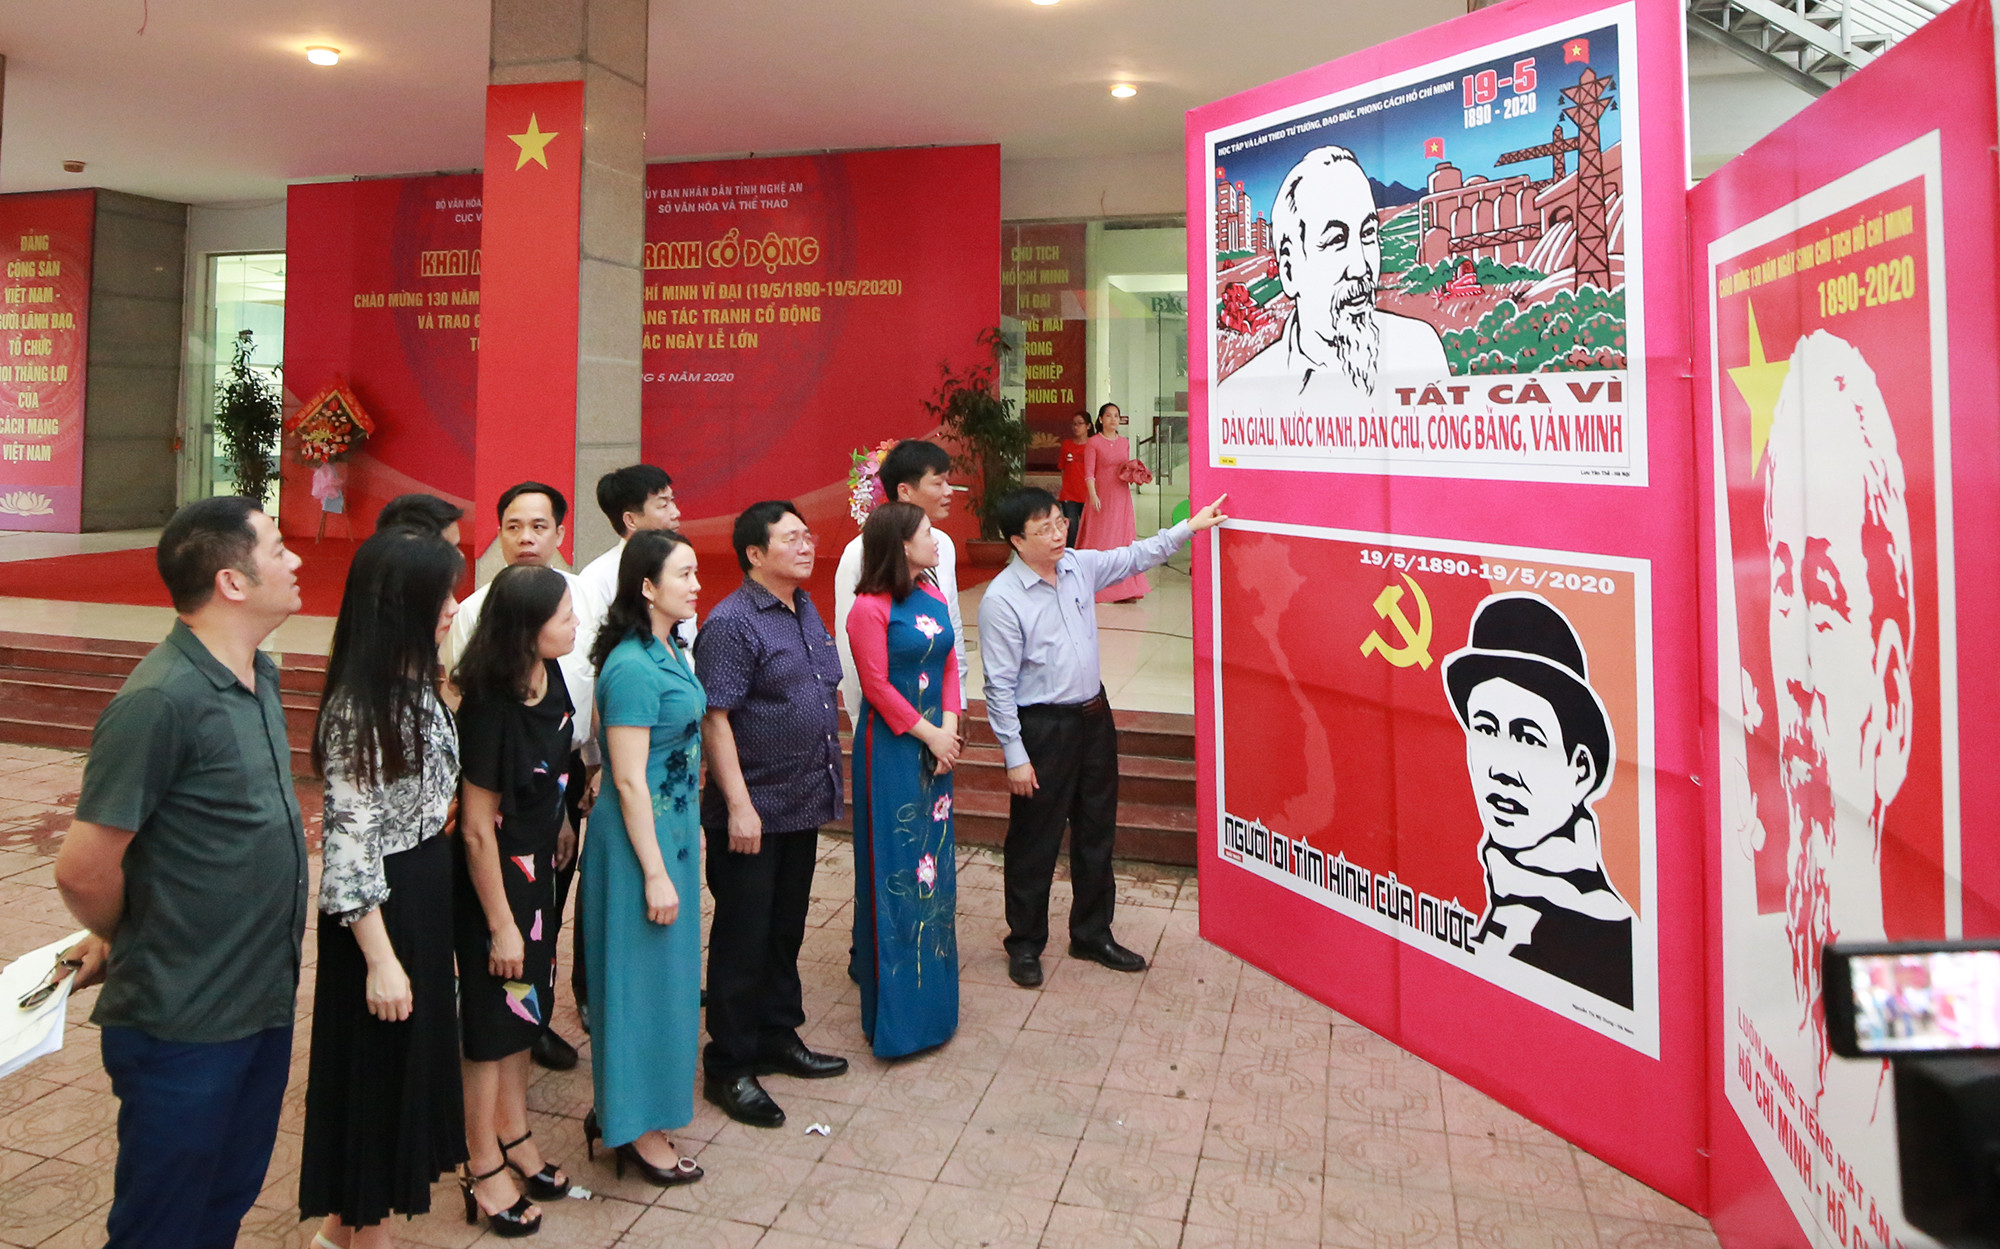 Các đại biểu chiêm ngưỡng các tác phẩm đạt giải cao, triển lãm sẽ kéo dài đến ngày 31/5 tại Quảng Trường Hồ Chí Minh, thành phố Vinh. Ảnh: Trung Kiên